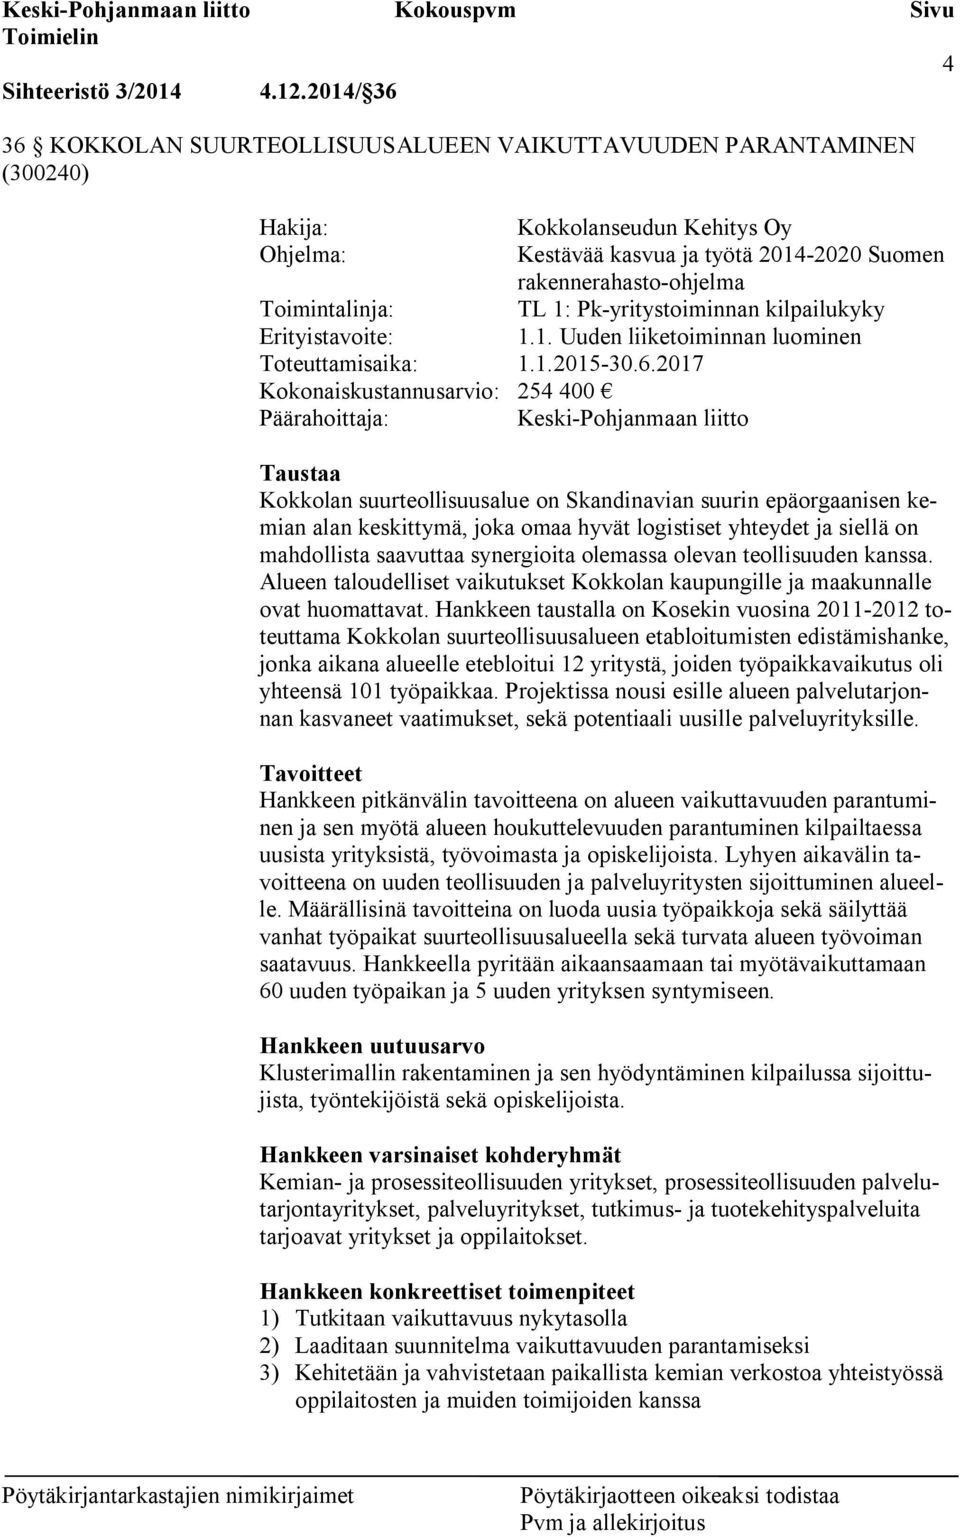 Toimintalinja: TL 1: Pk-yritystoiminnan kilpailukyky Erityistavoite: 1.1. Uuden liiketoiminnan luominen Toteuttamisaika: 1.1.2015-30.6.